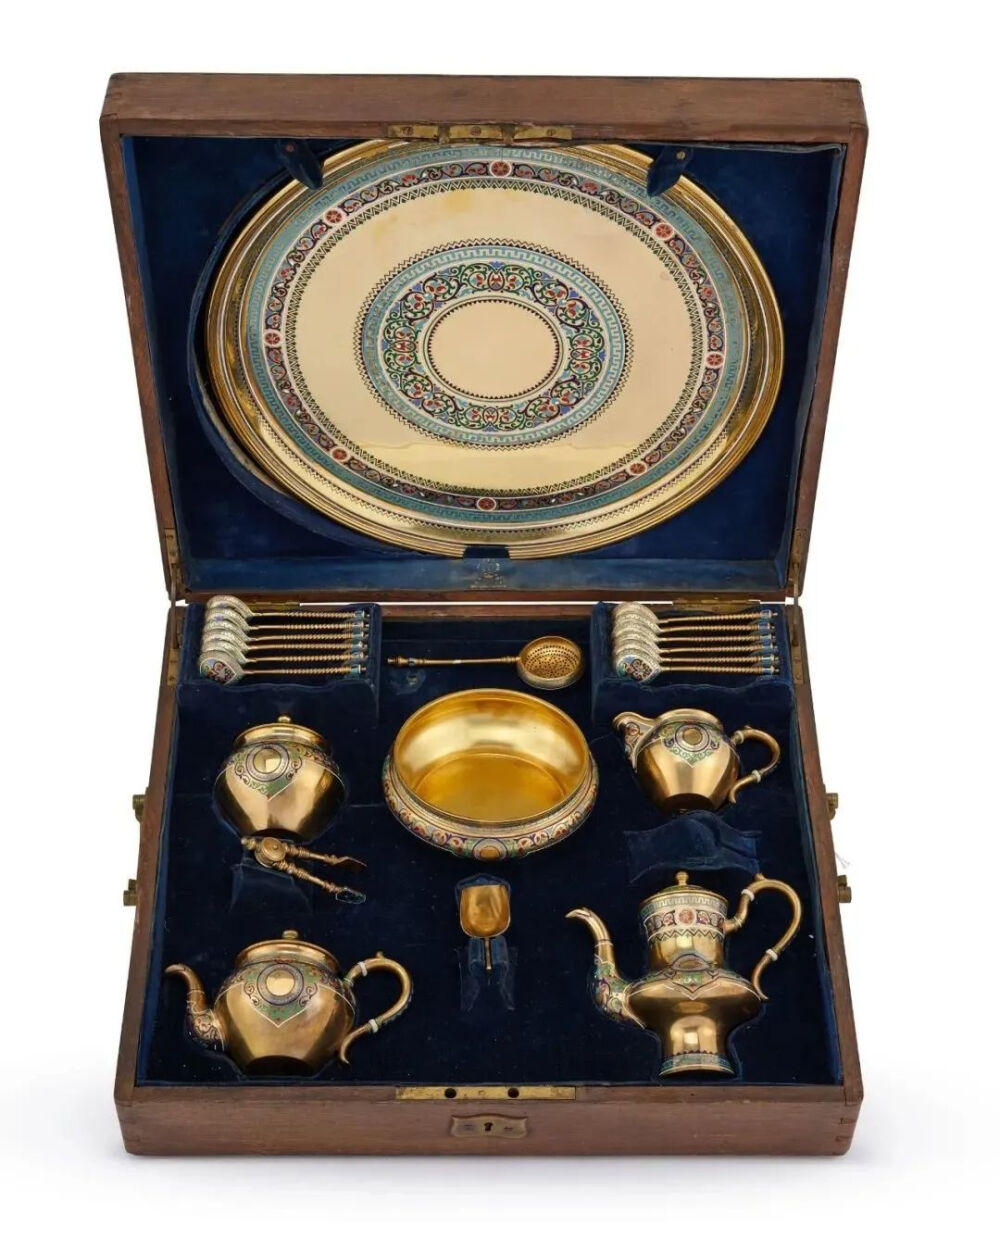 茶具一套
Pavel Ovchinnikov
1876 年
银镀金和掐丝珐琅 
多种尺寸；托盘直径 39.7 厘米
两依藏博物馆藏
